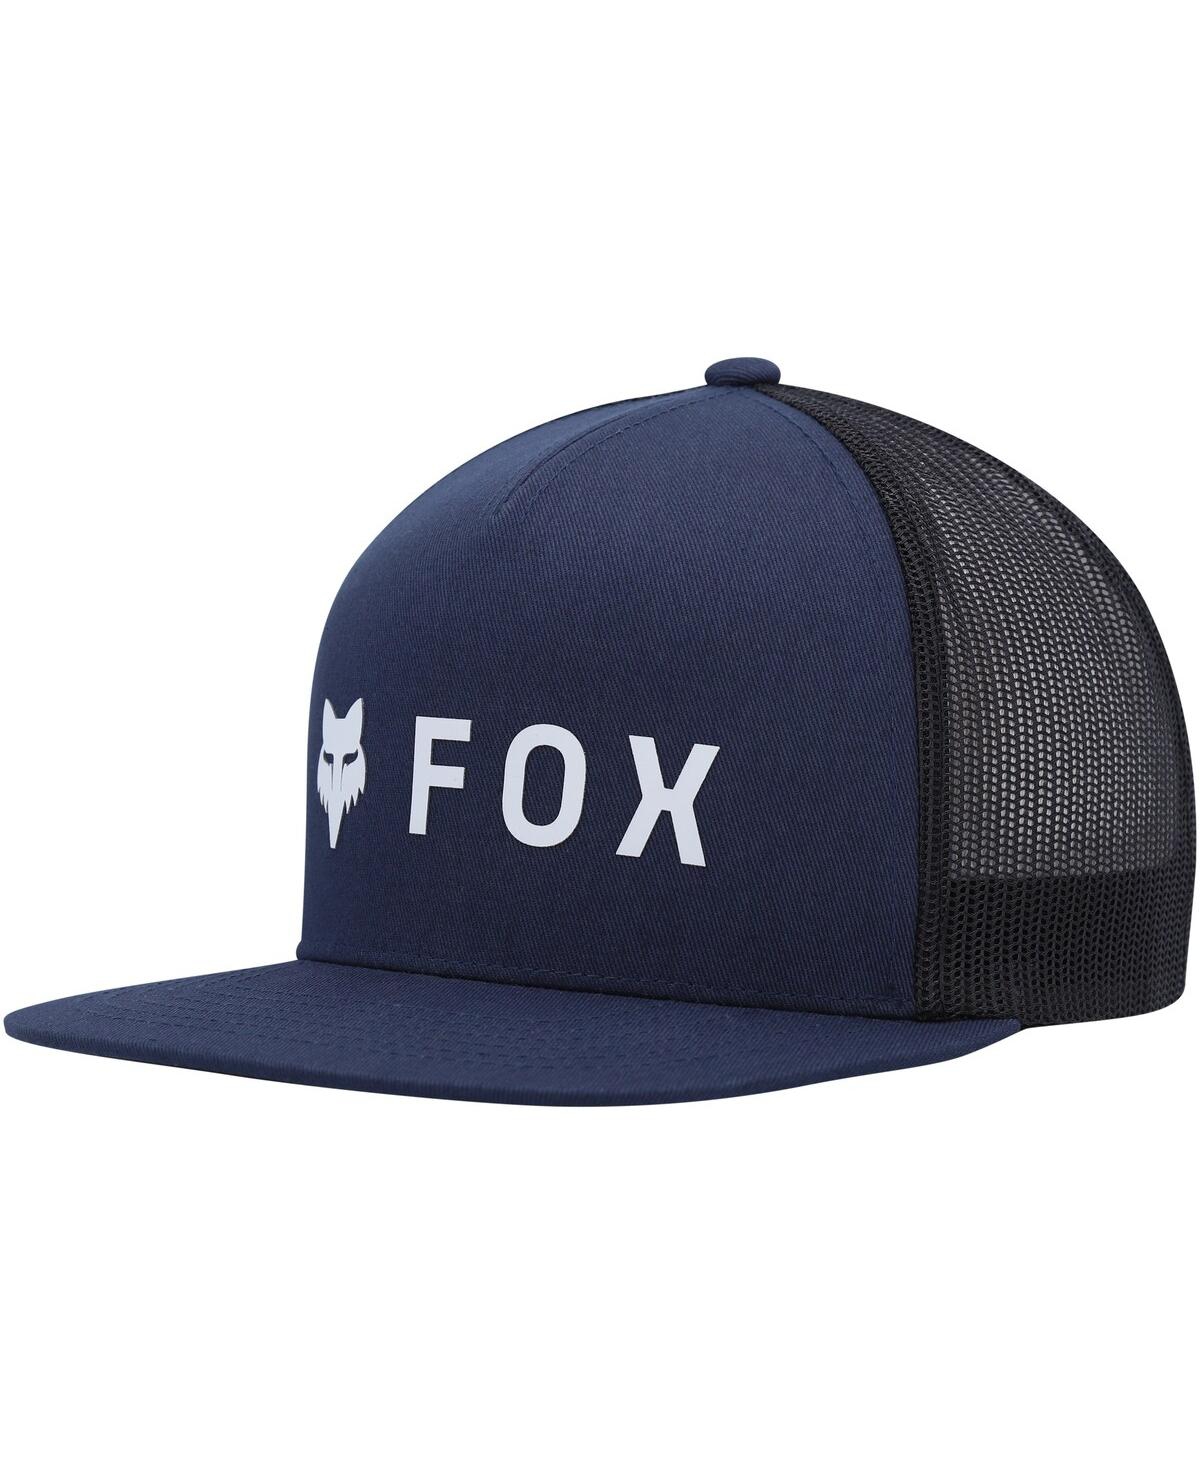 Men's Fox Navy Absolute Mesh Snapback Hat - Navy